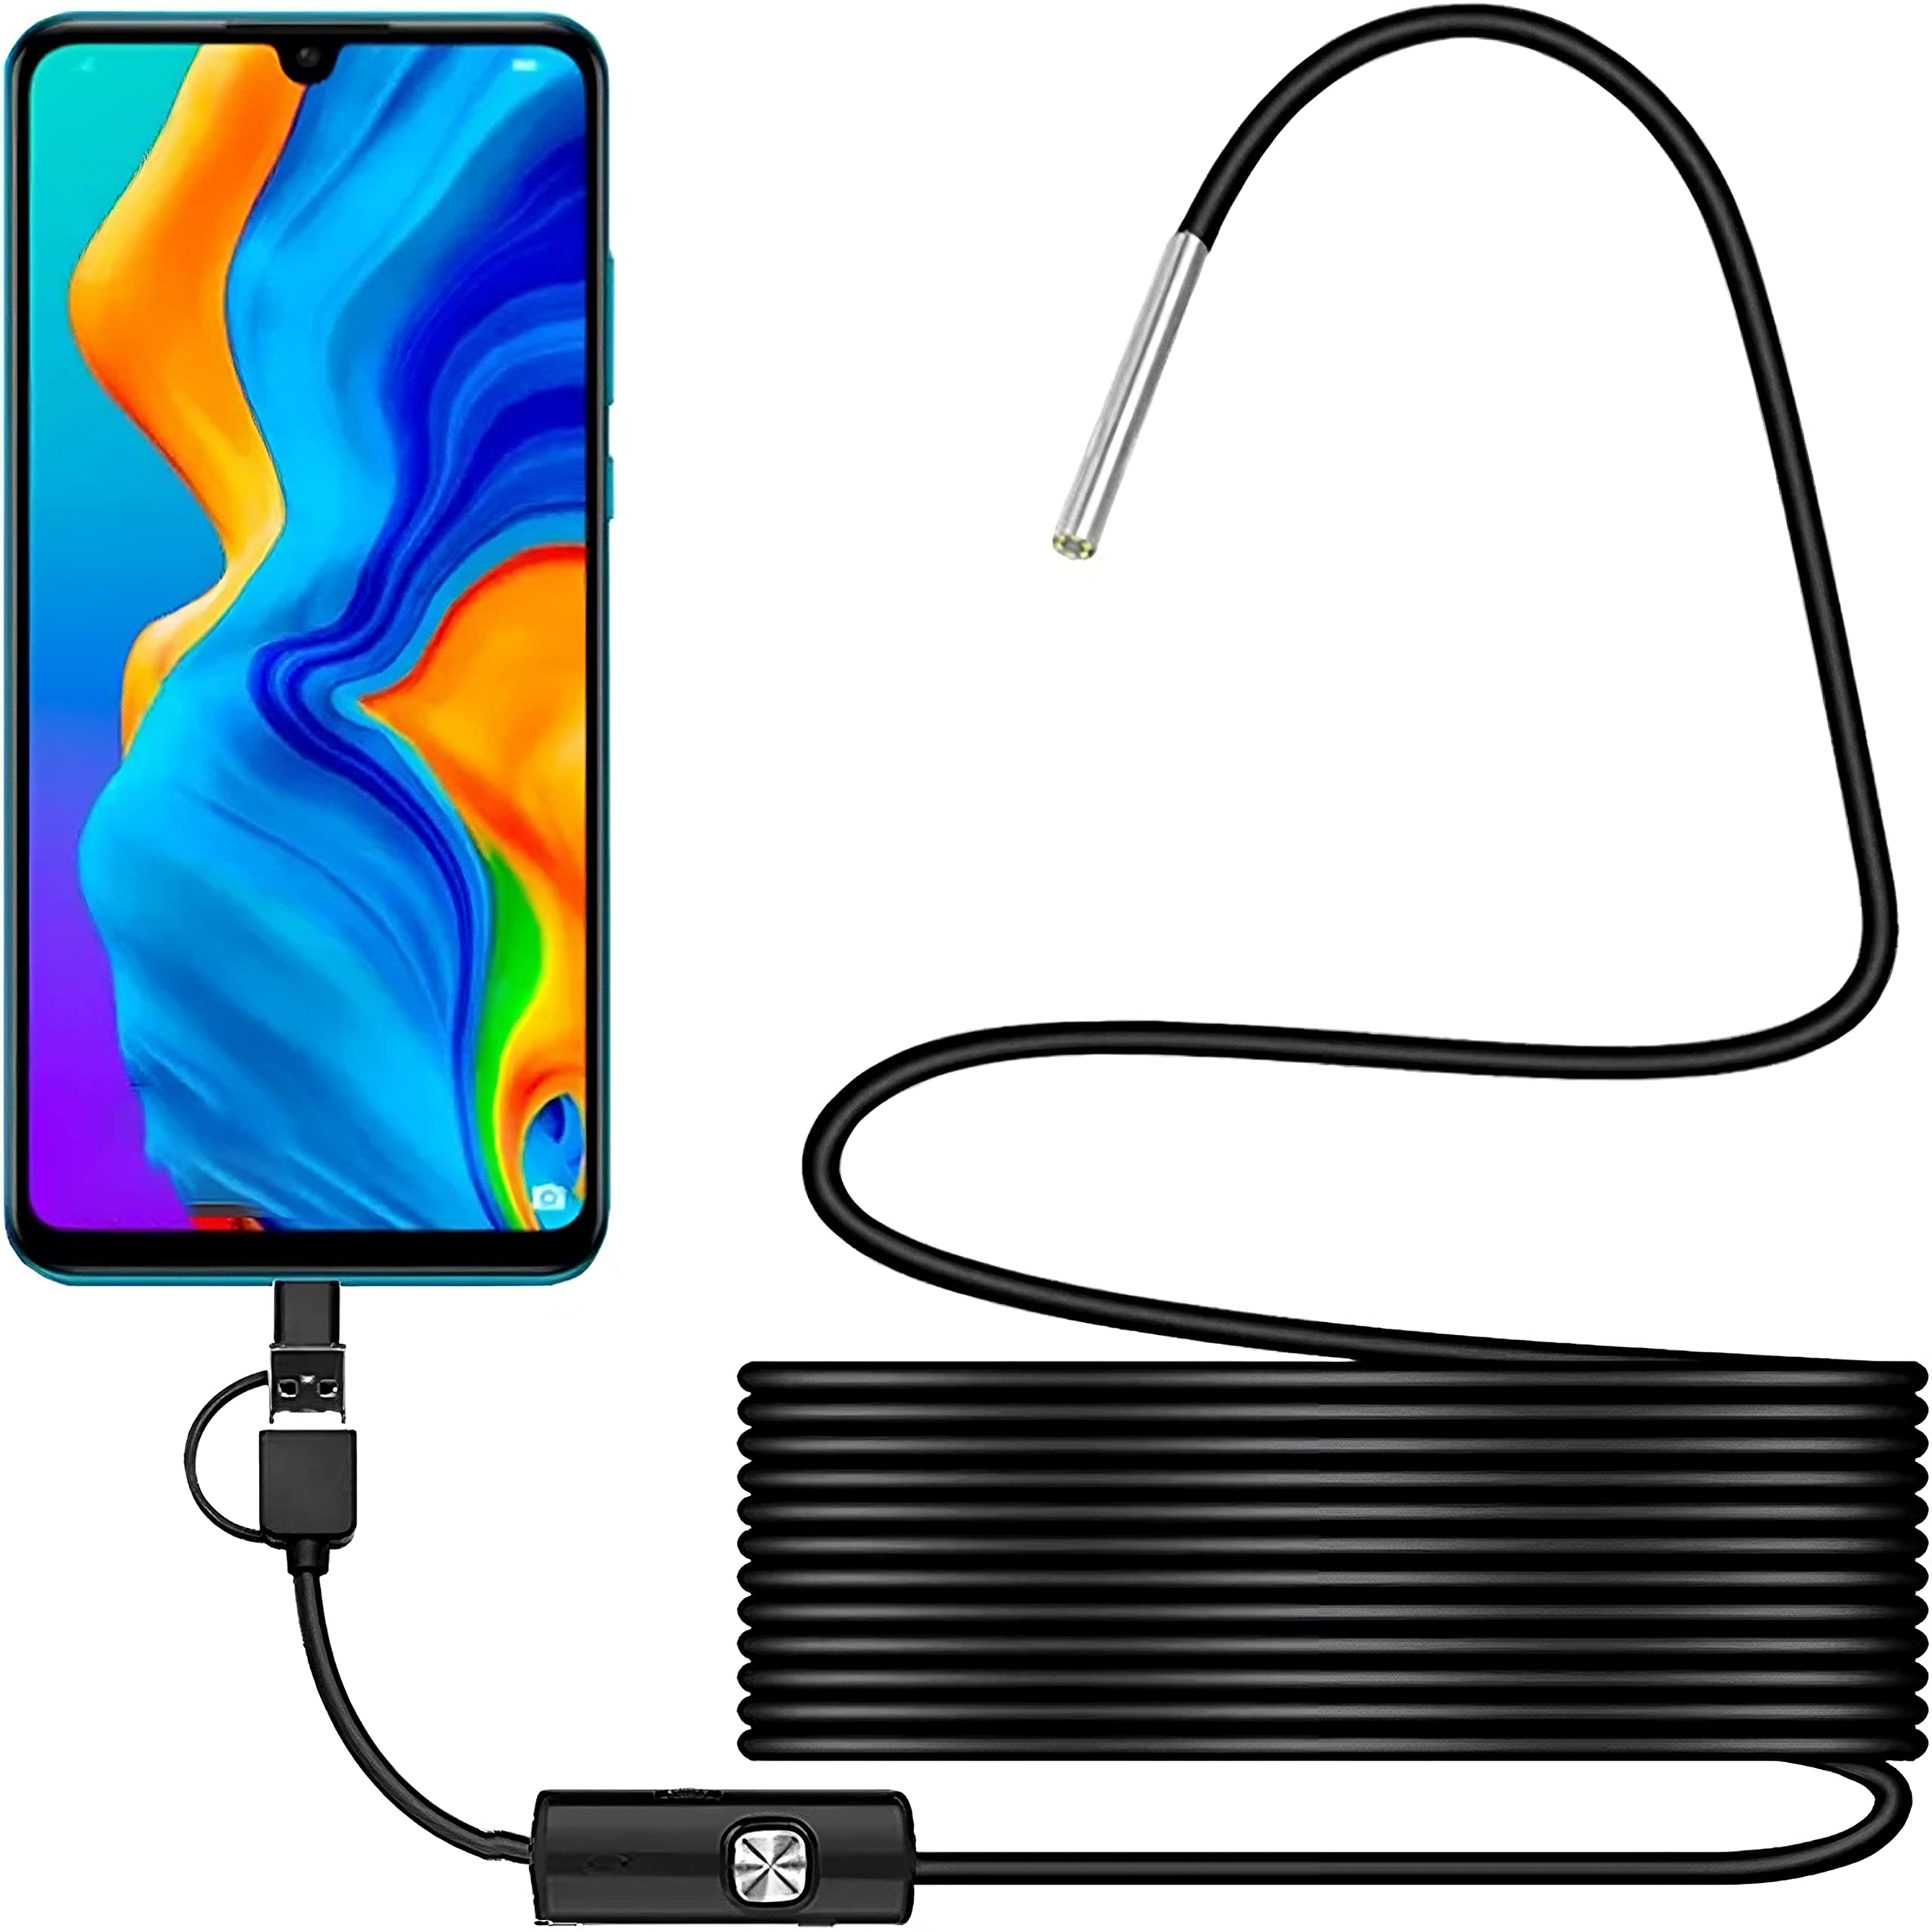 Retoo Endoskop USB-C HD für Android, 3.9 mm Endoskopkamera mit LED wasserdichte, Megapixel Inspektionskamera, Schlangenkabel für Smartphone, Kabelschlangenkamera, Handy Endoskop, Boreskope Kamera